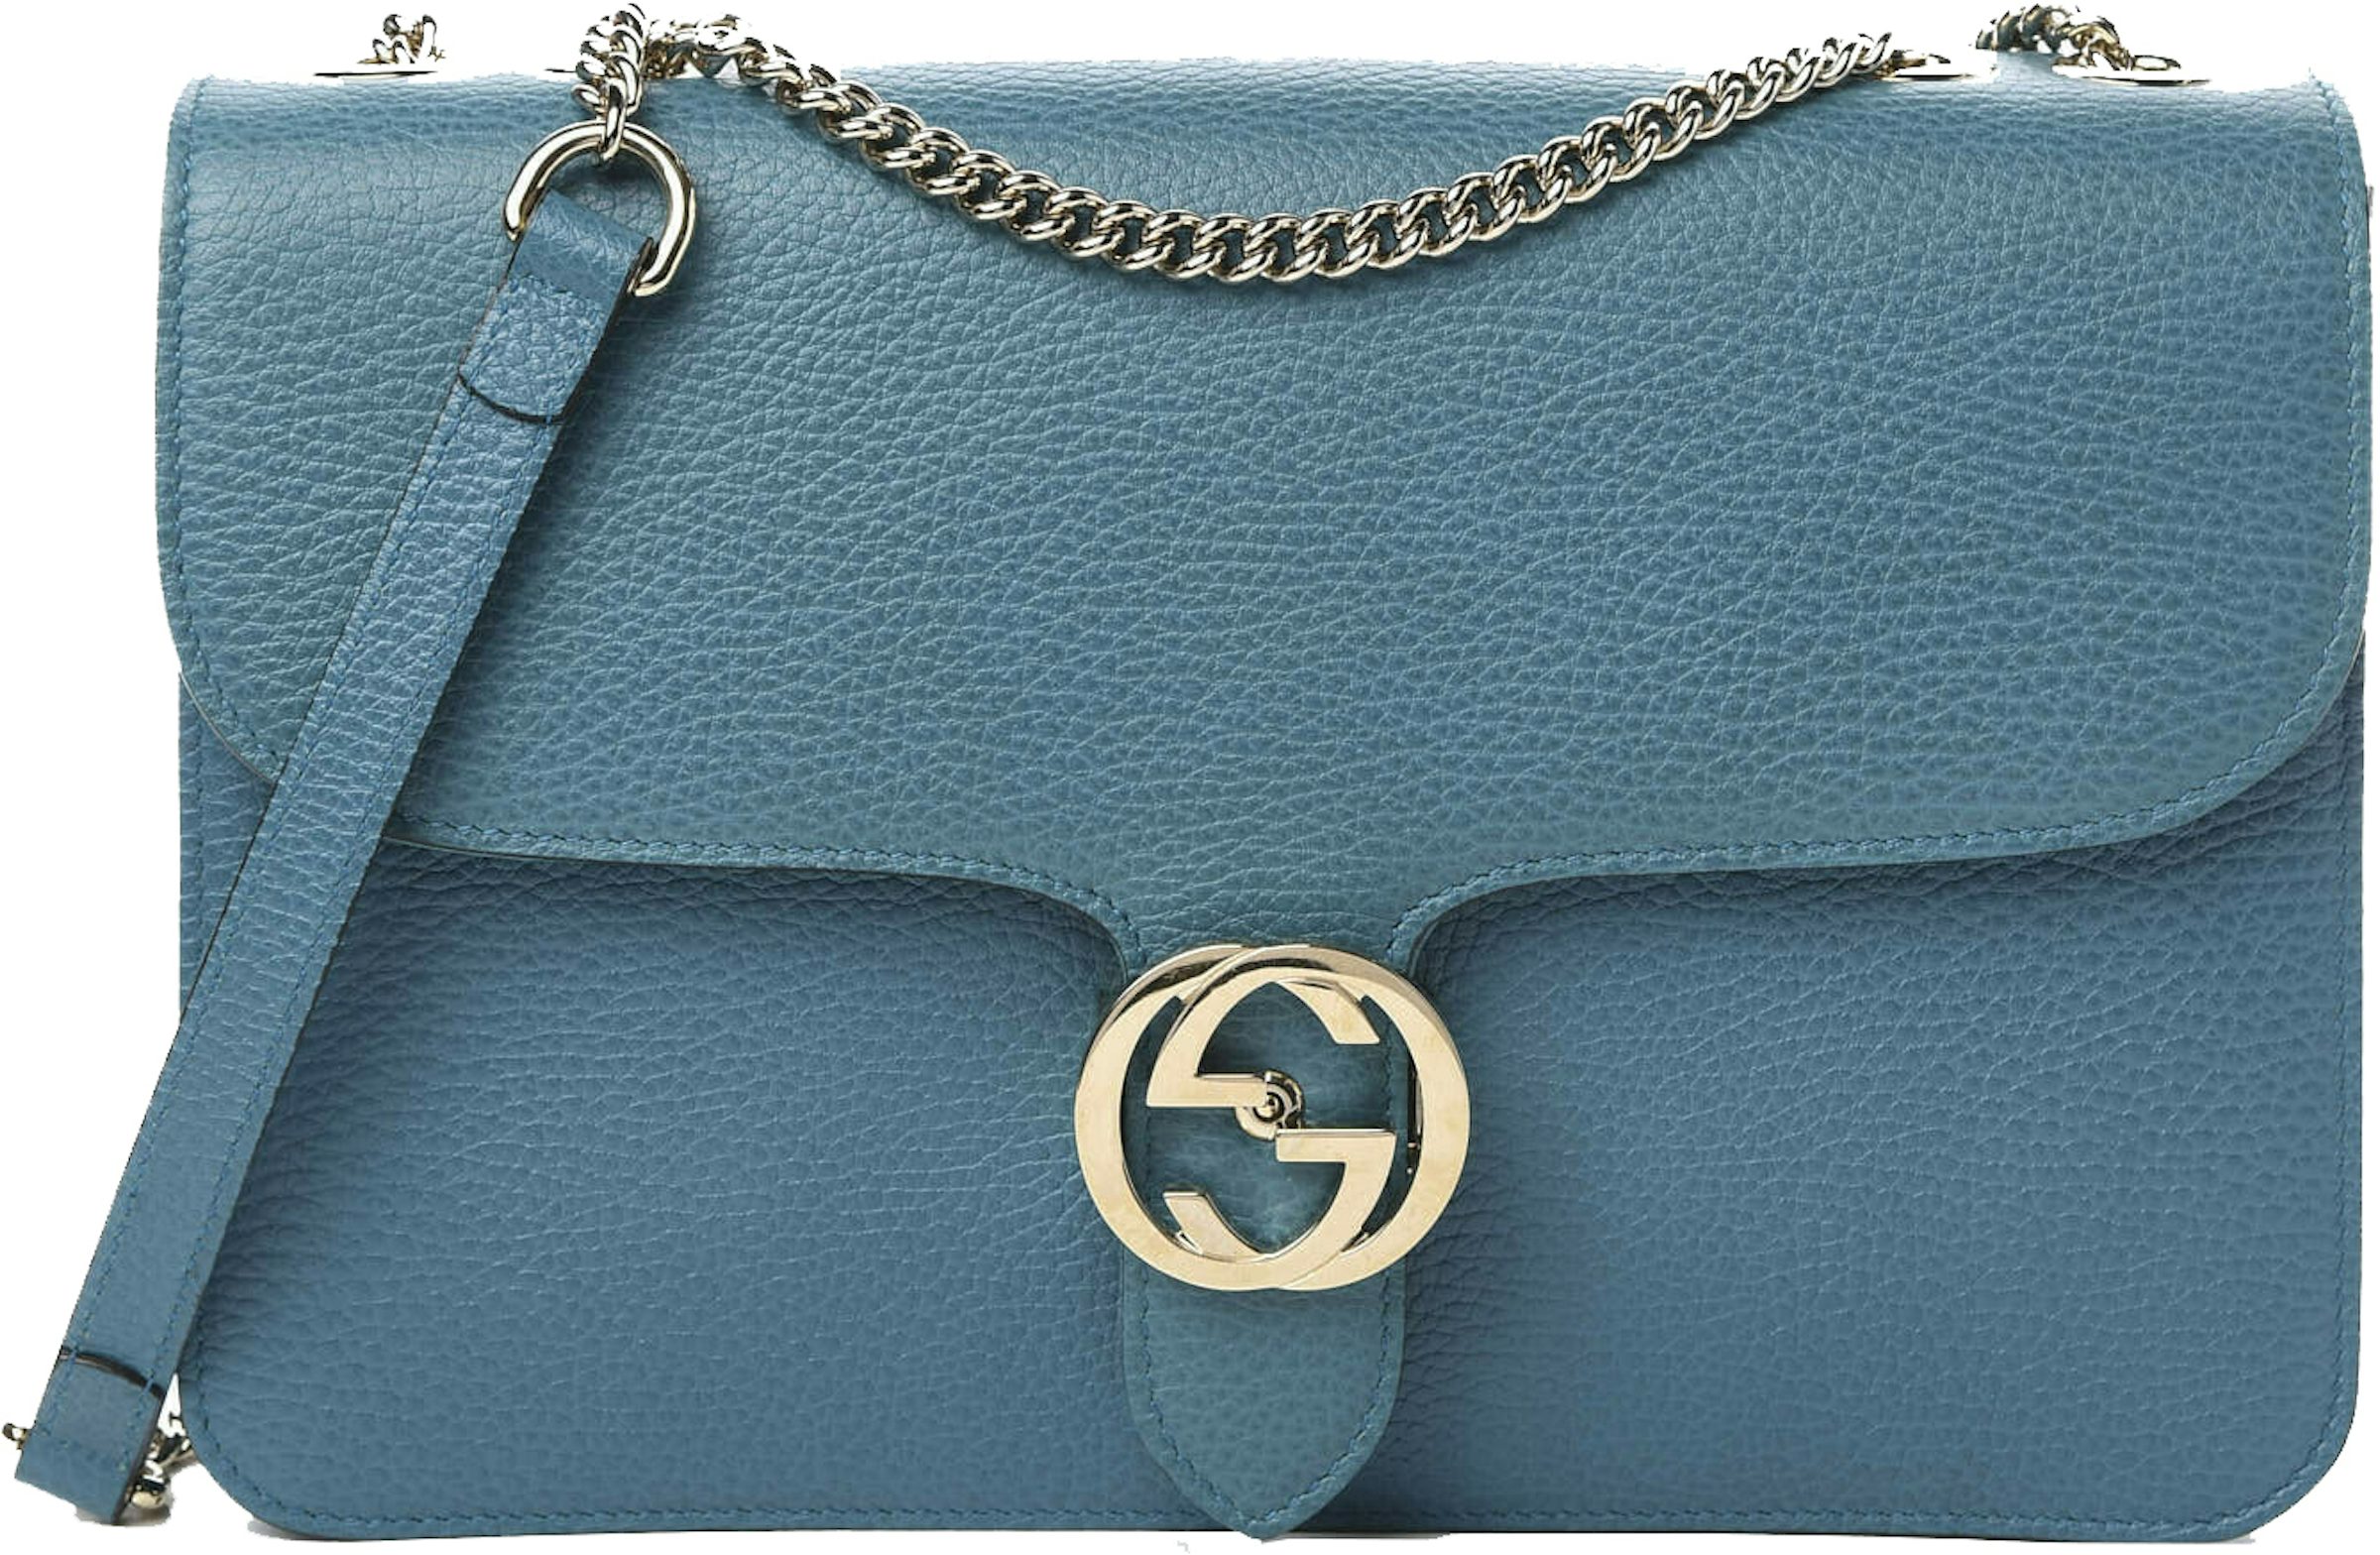 Gucci Light Blue Leather Interlocking G Shoulder Bag Gucci